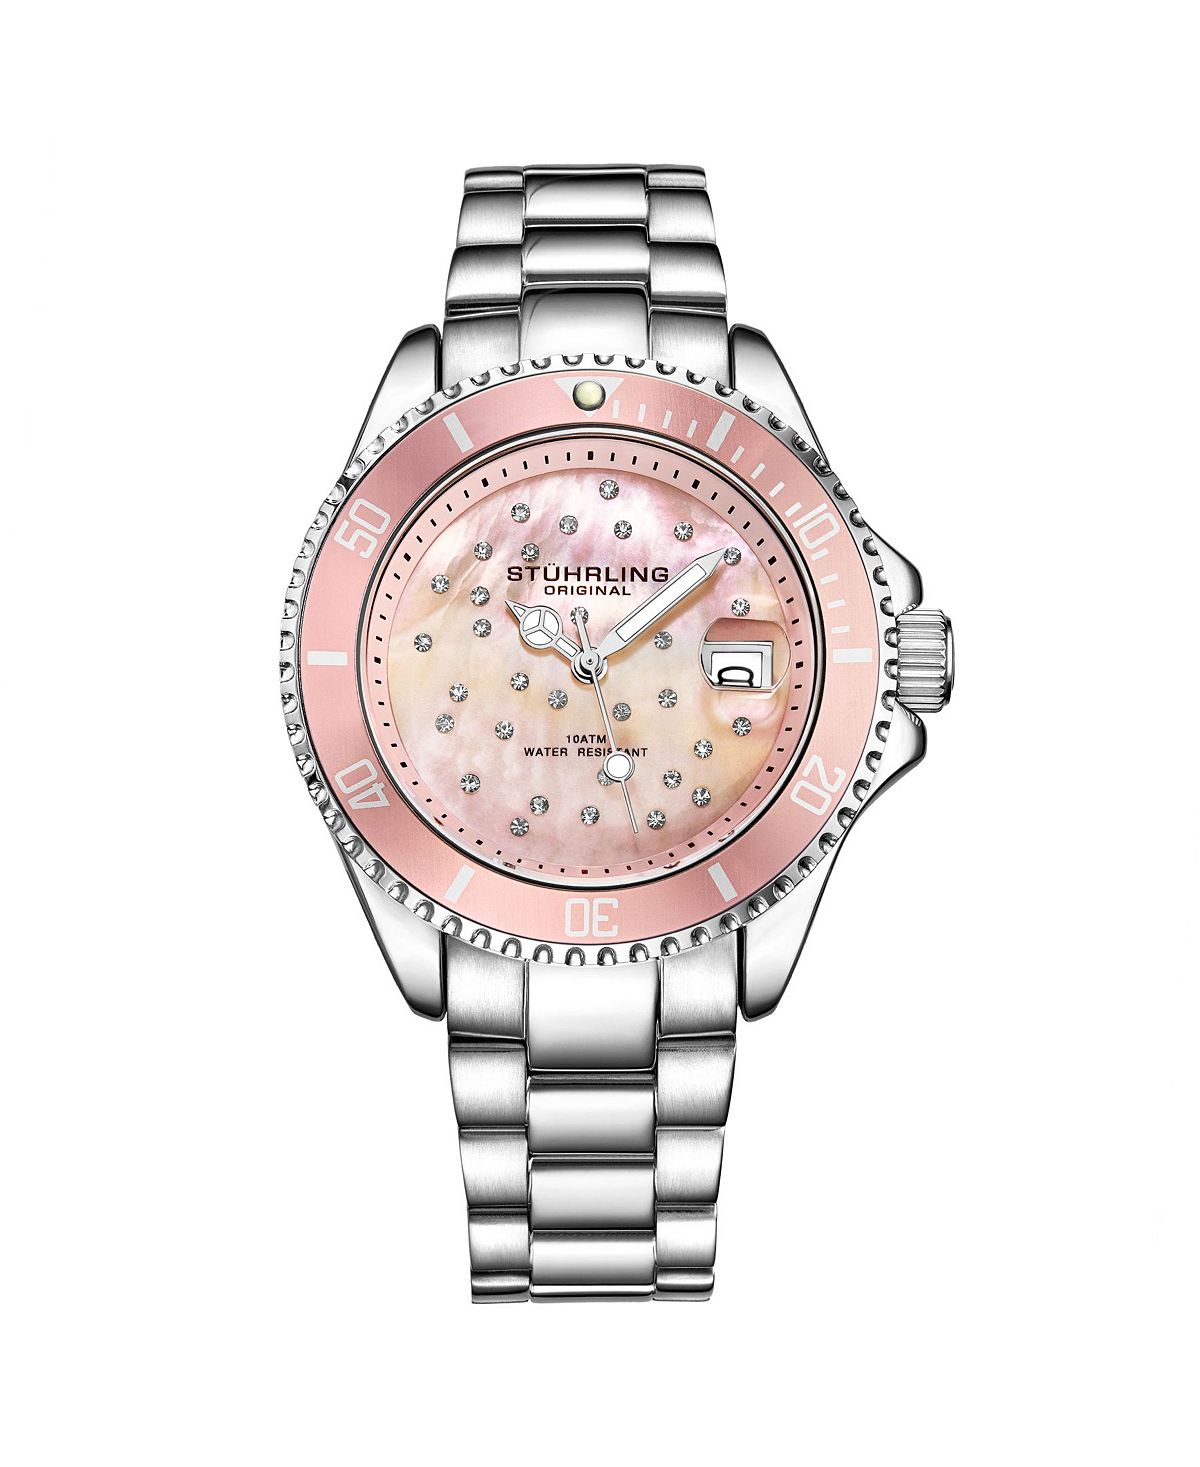 Женские часы-браслет из нержавеющей стали серебристого цвета, 39 мм Stuhrling, серебро женские часы cristal из нержавеющей стали серебристого цвета 28 мм jbw